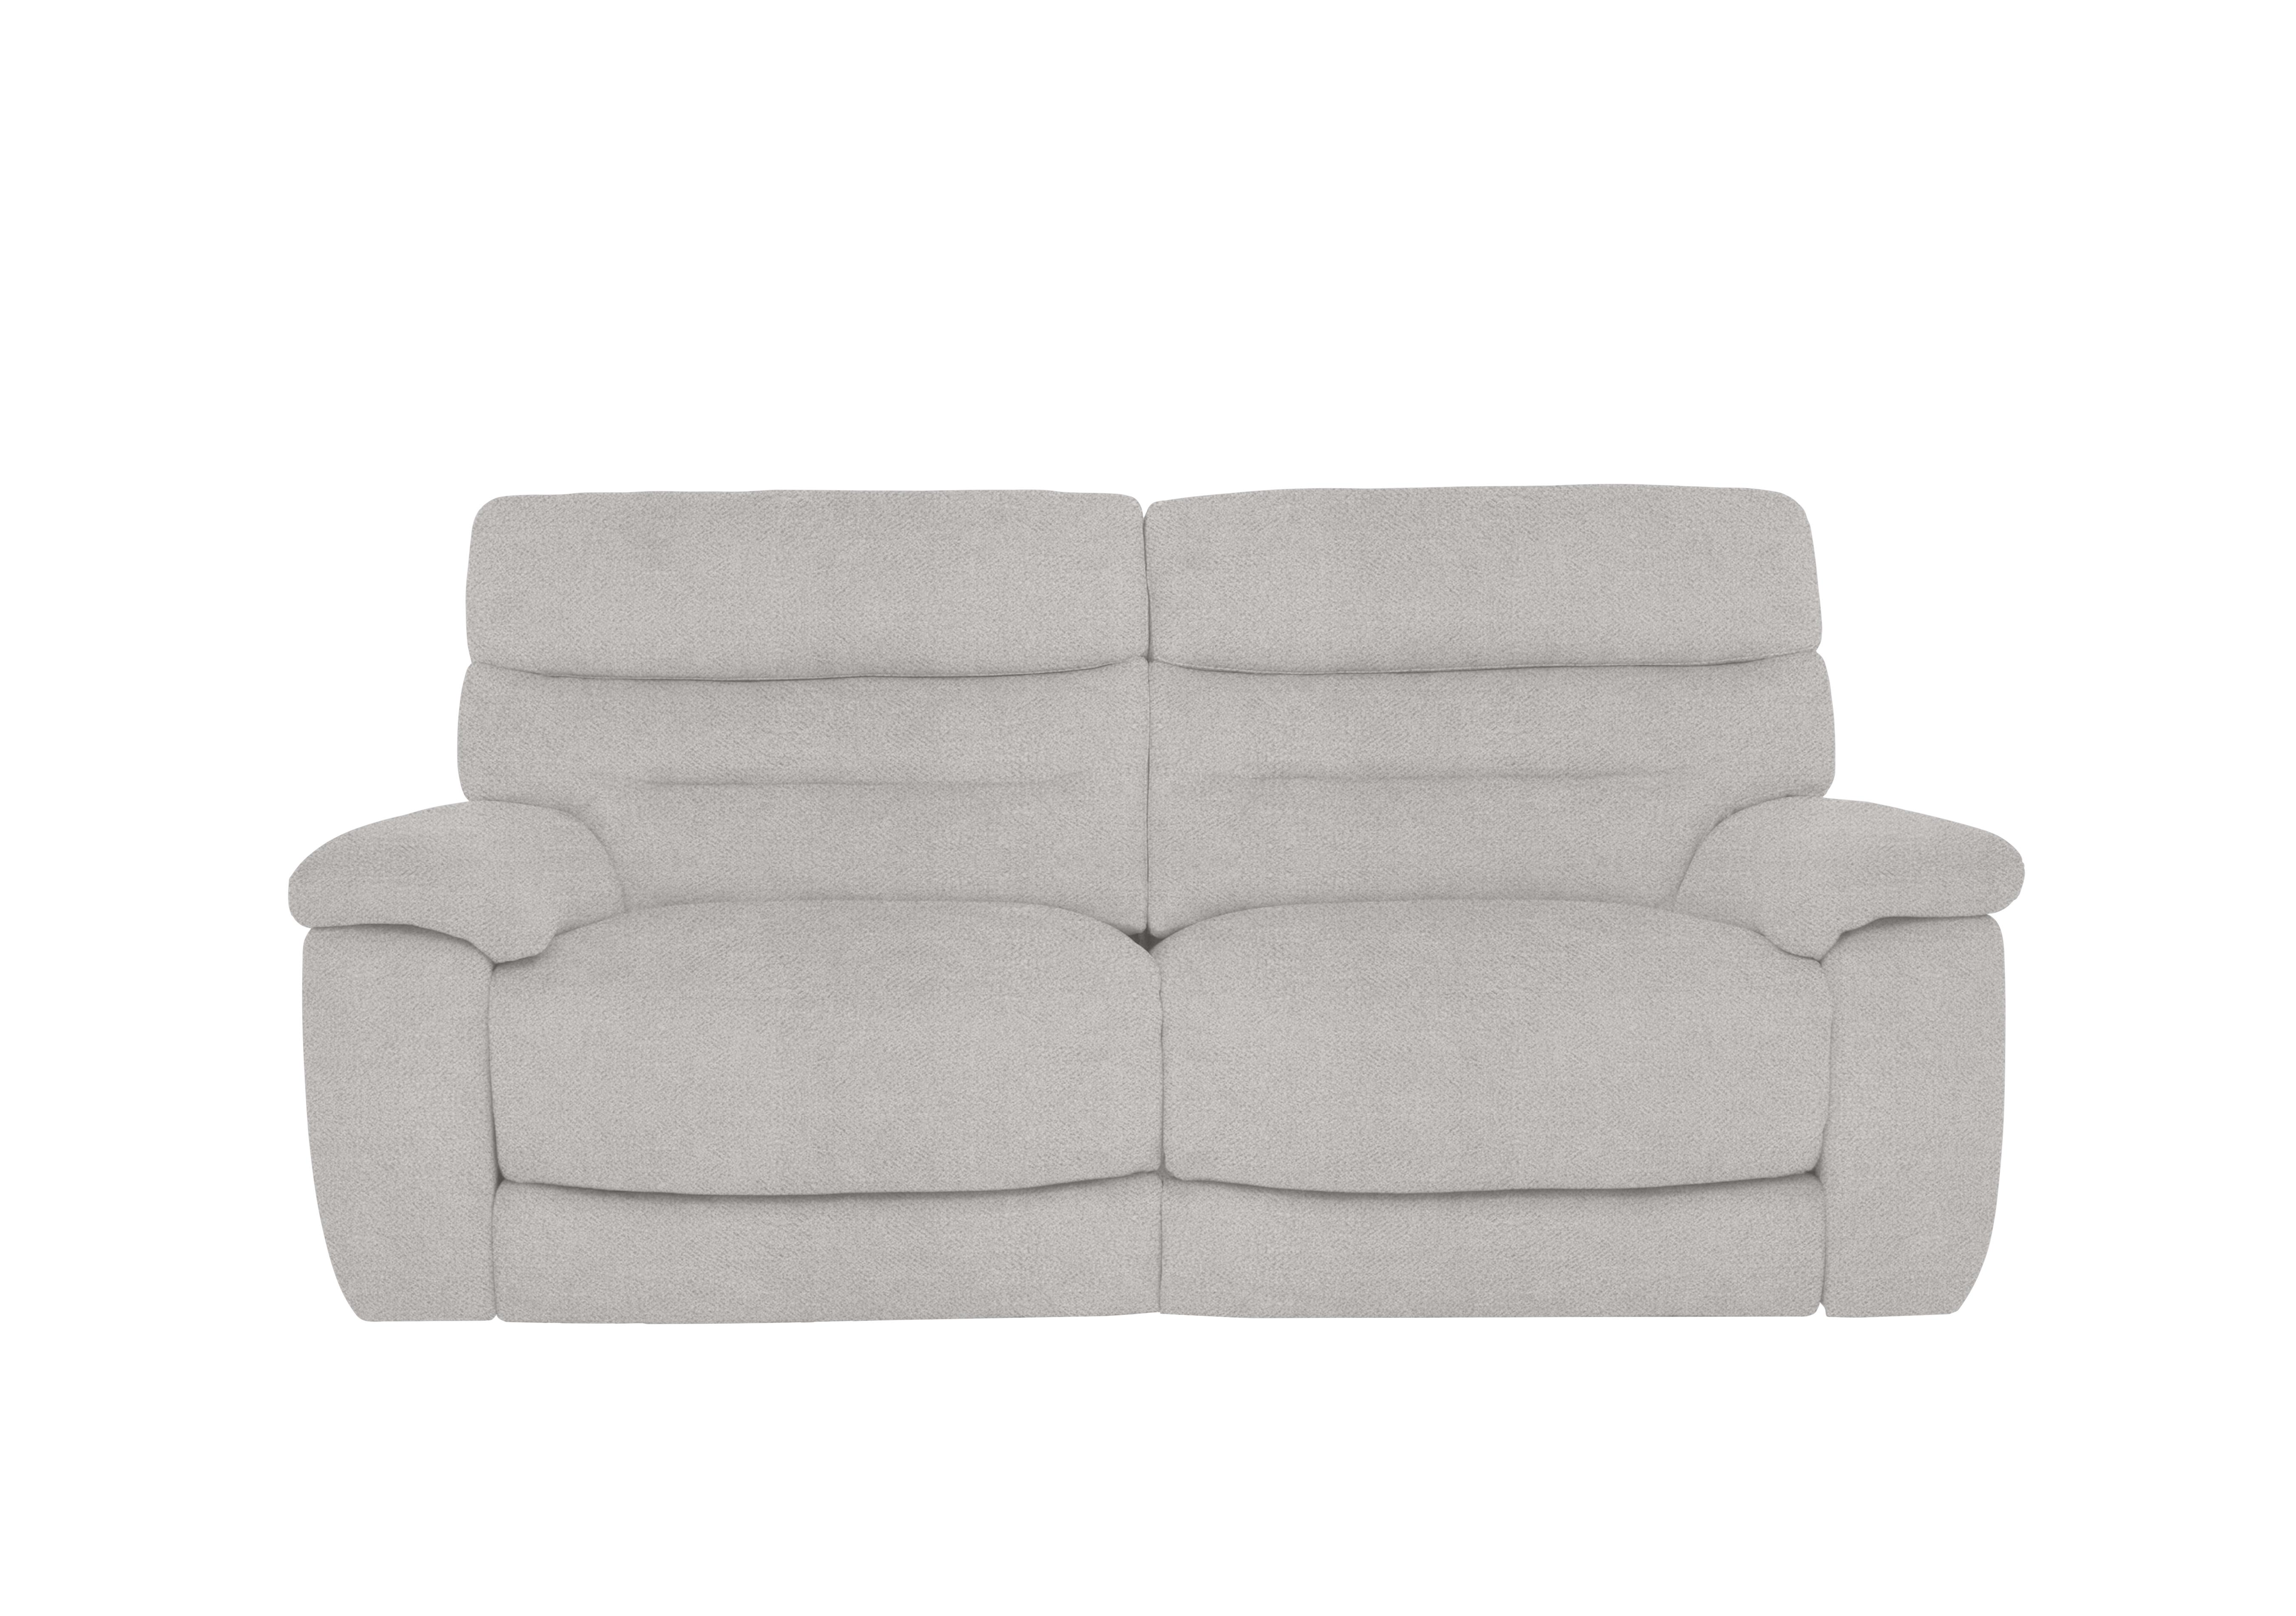 Nimbus 3 Seater Fabric Sofa in Fab-Meo-R23 Silver Grey on Furniture Village